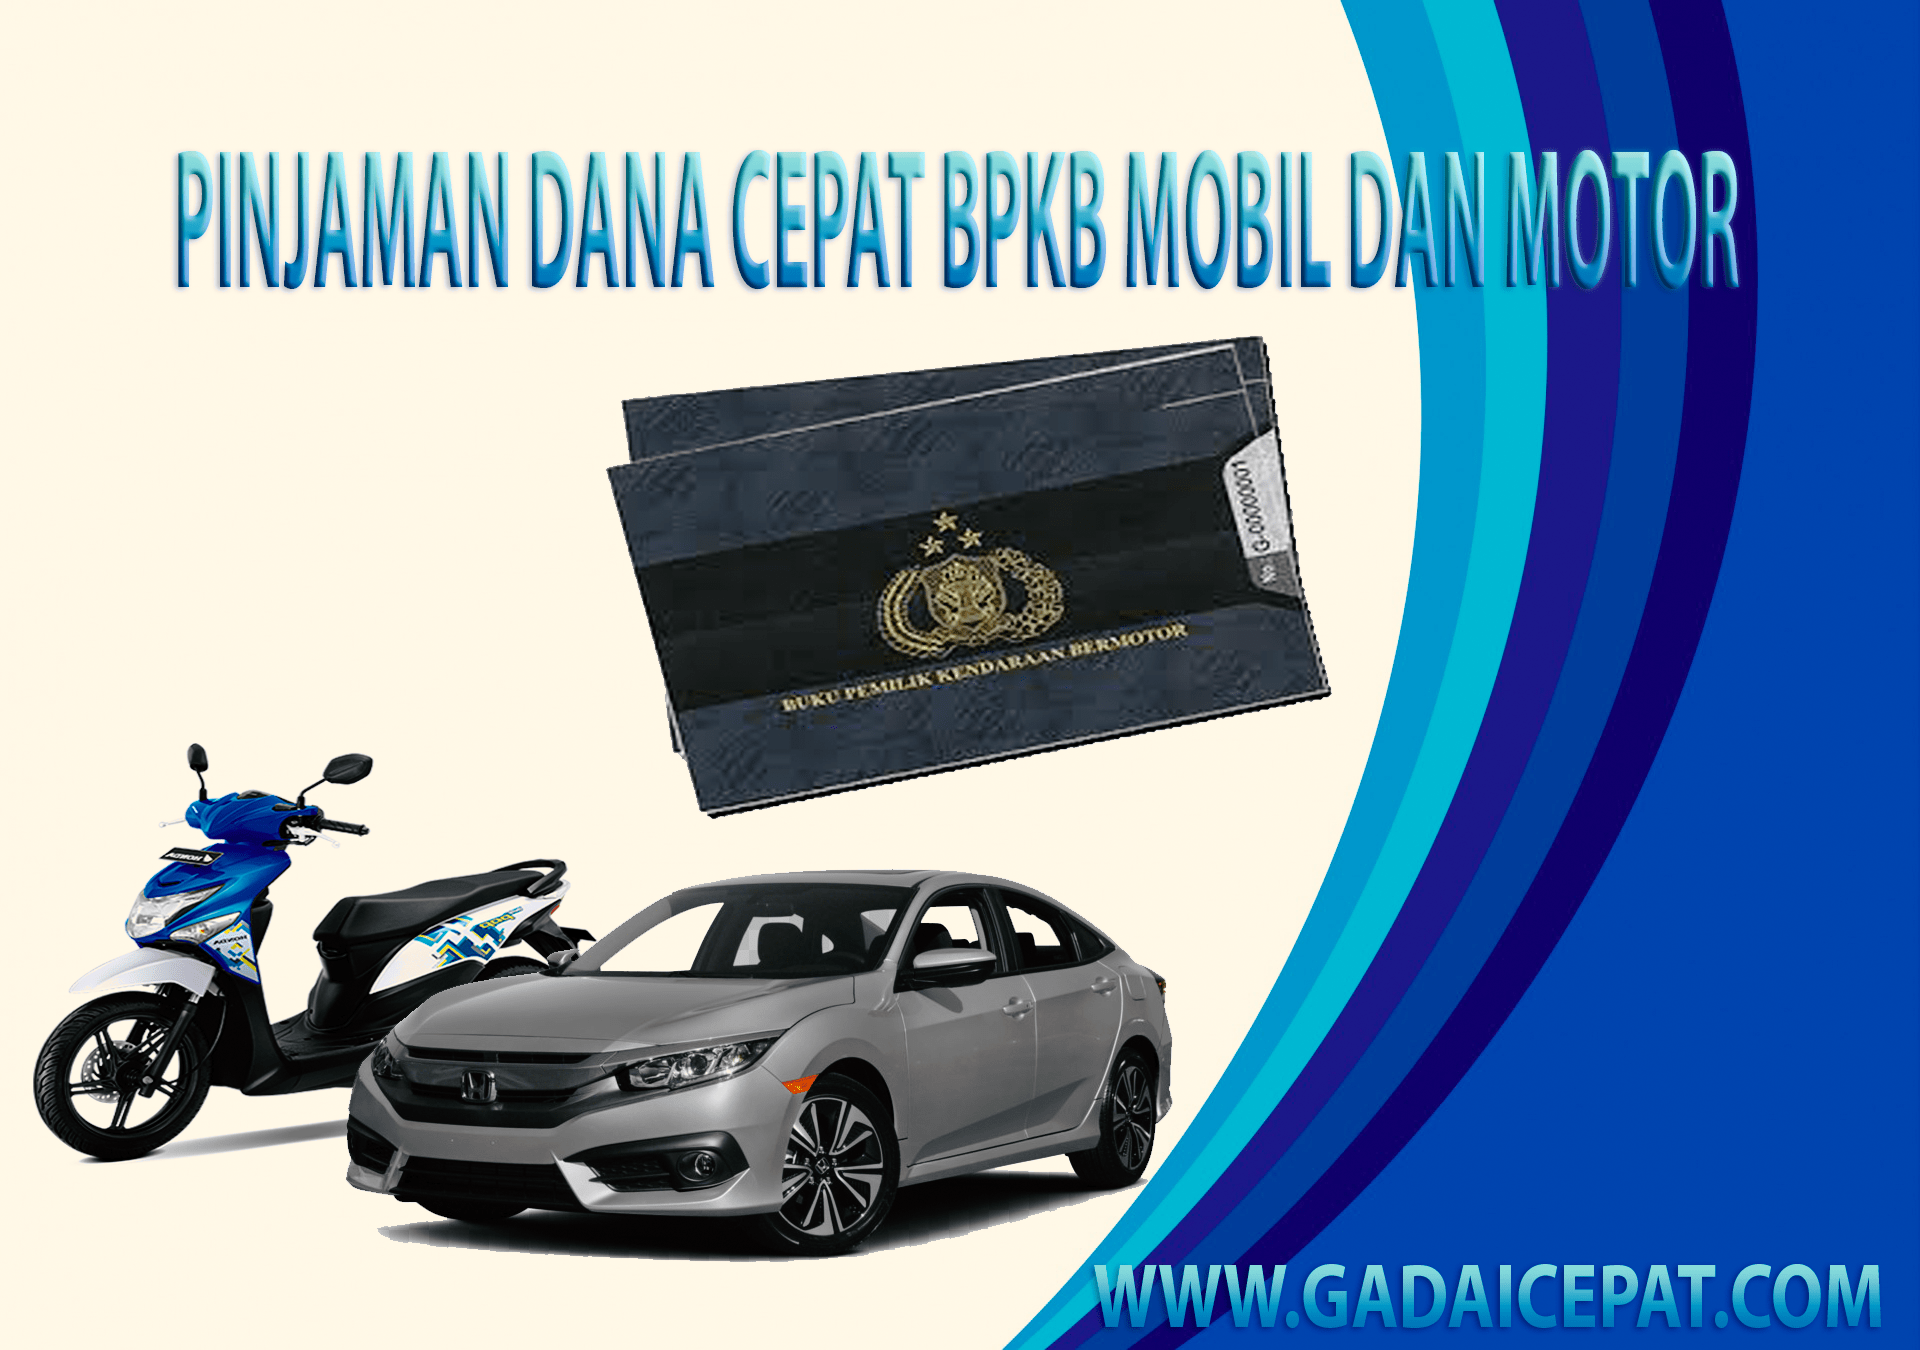 Gadai Bpkb Mobil Di Medan Kota Medan Sumatera Utara